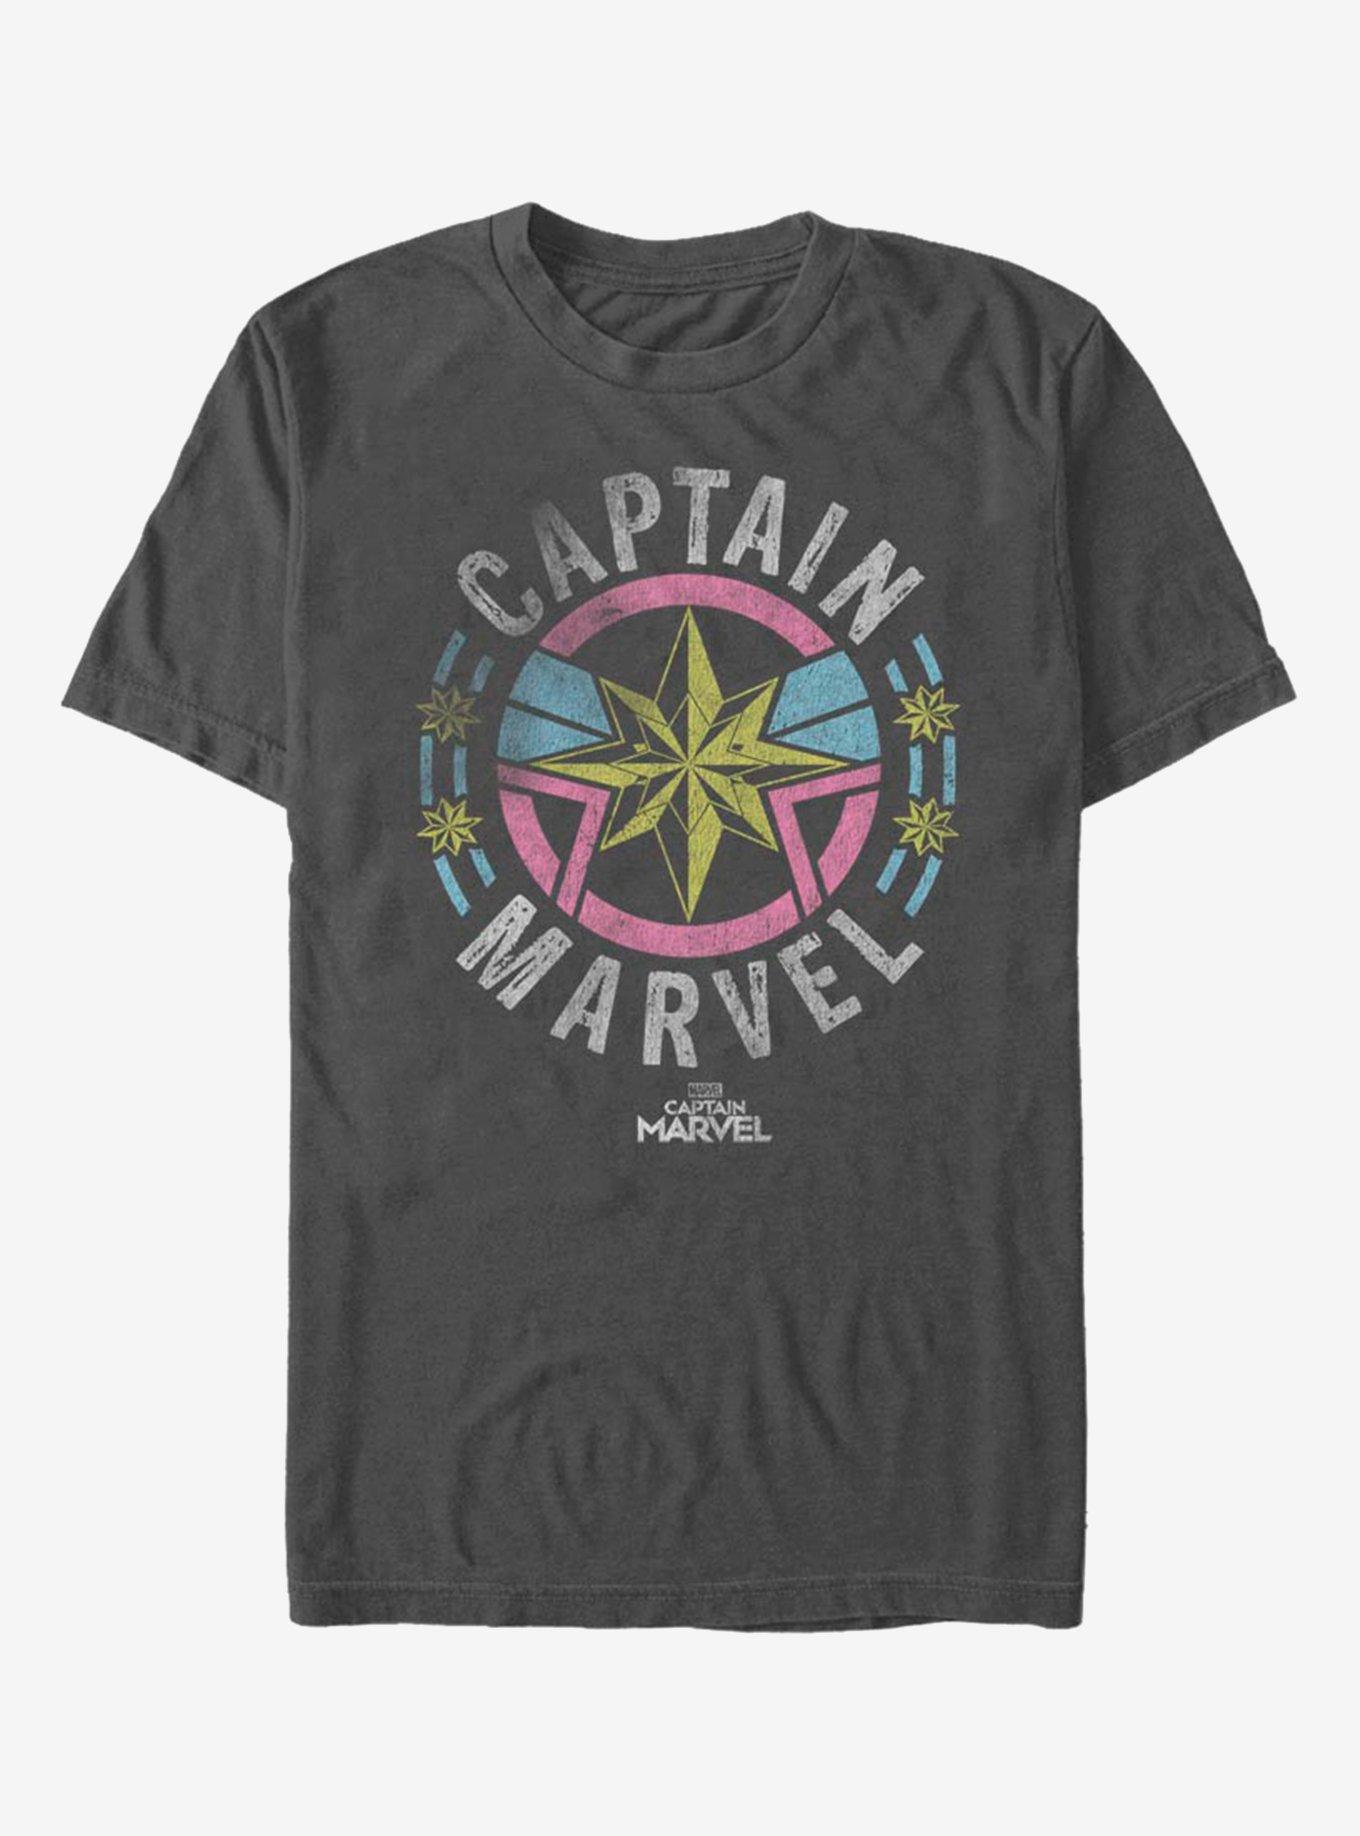 Marvel Captain Marvel Captain Marvel Retro Badge T-Shirt, CHARCOAL, hi-res